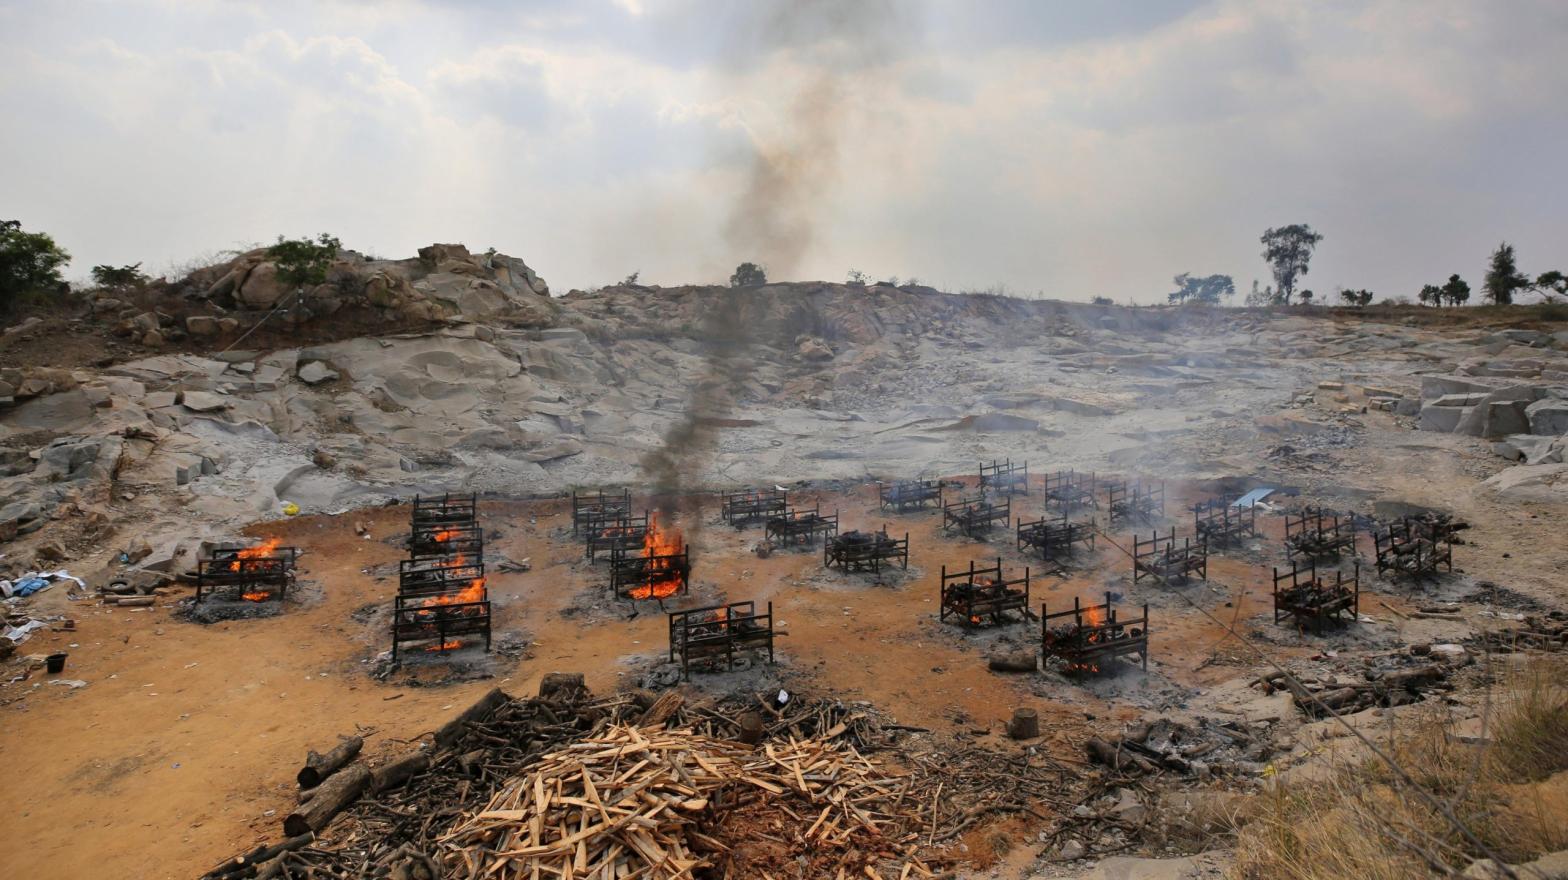 Funeral pyres for 25 separate people burn at a granite quarry near Bengaluru, India, in May 2021. (Photo: Aijaz Rahi / File, AP)